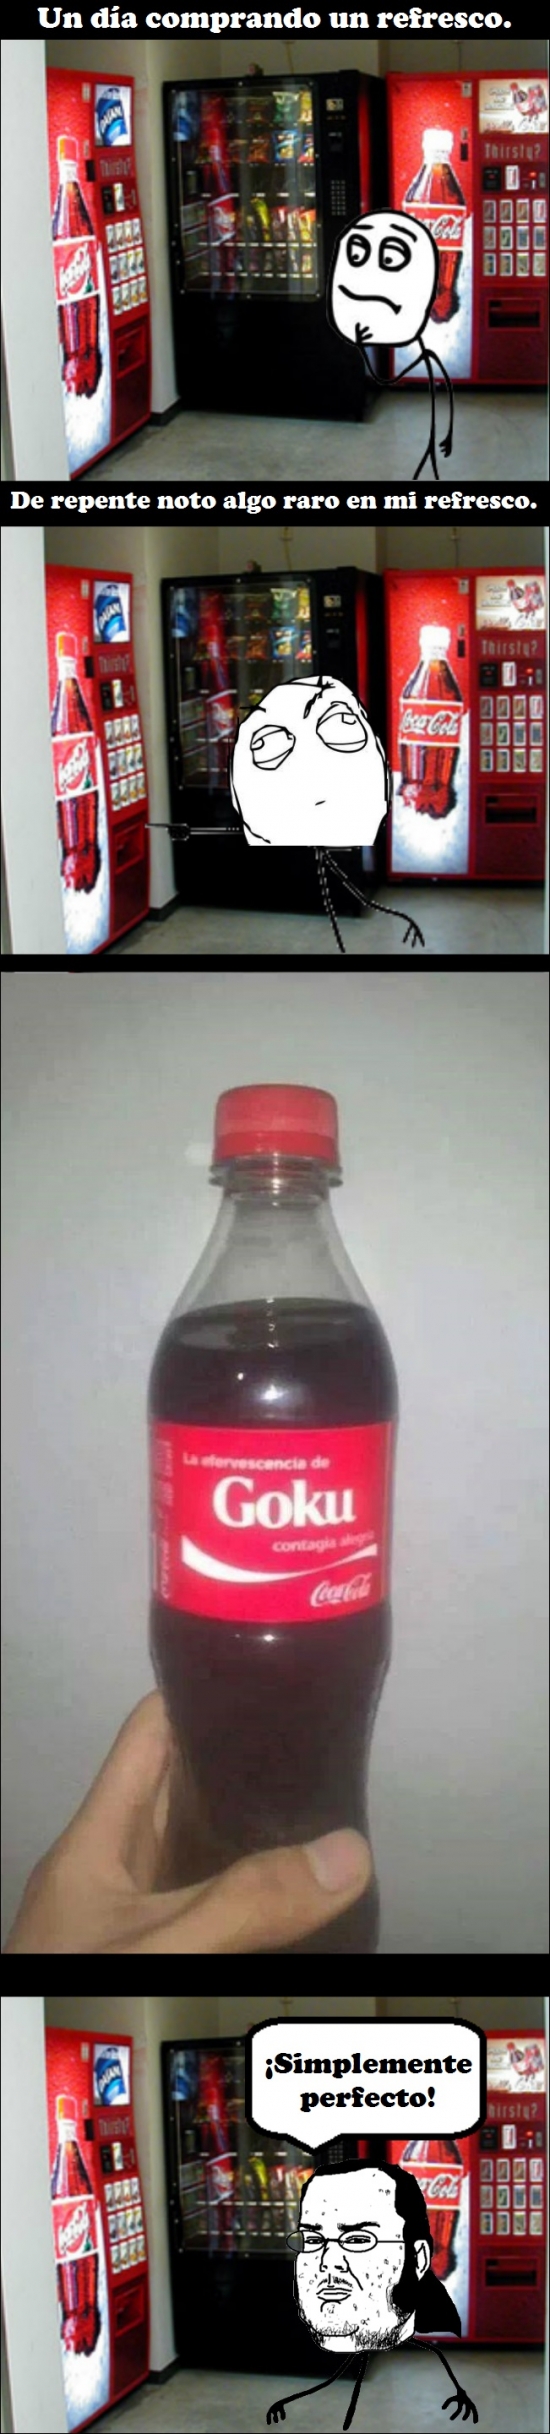 Coca-Cola,Compartir,Comprar,Friki,Fuerza,Goku,Refresco